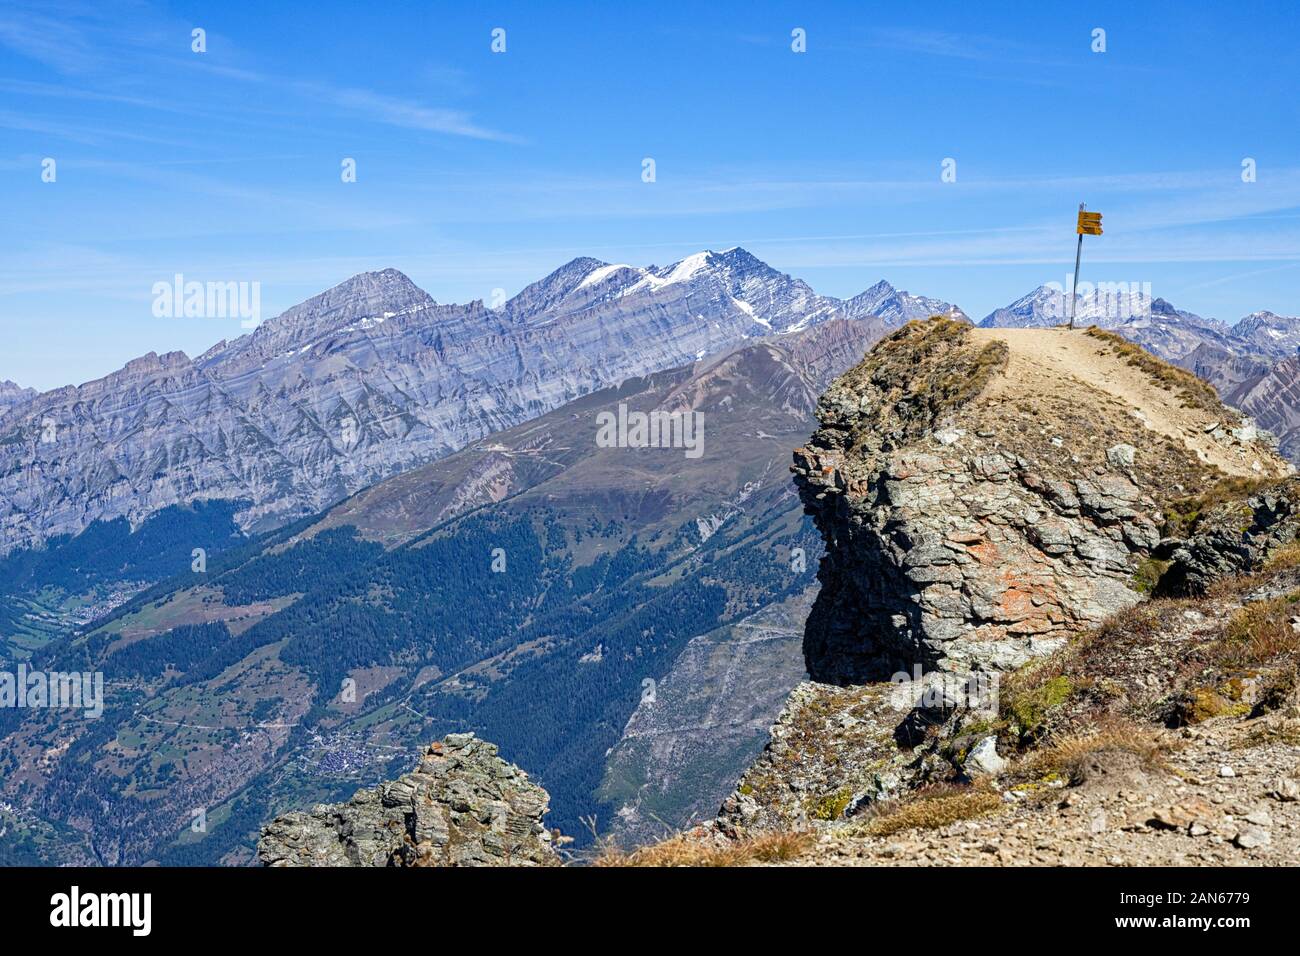 En Illhorn, una montaña de los Alpes Peninos.Vista del valle del Ródano con los Alpes Peninos y Bernese.Chandolin, Valais, Suiza Foto de stock